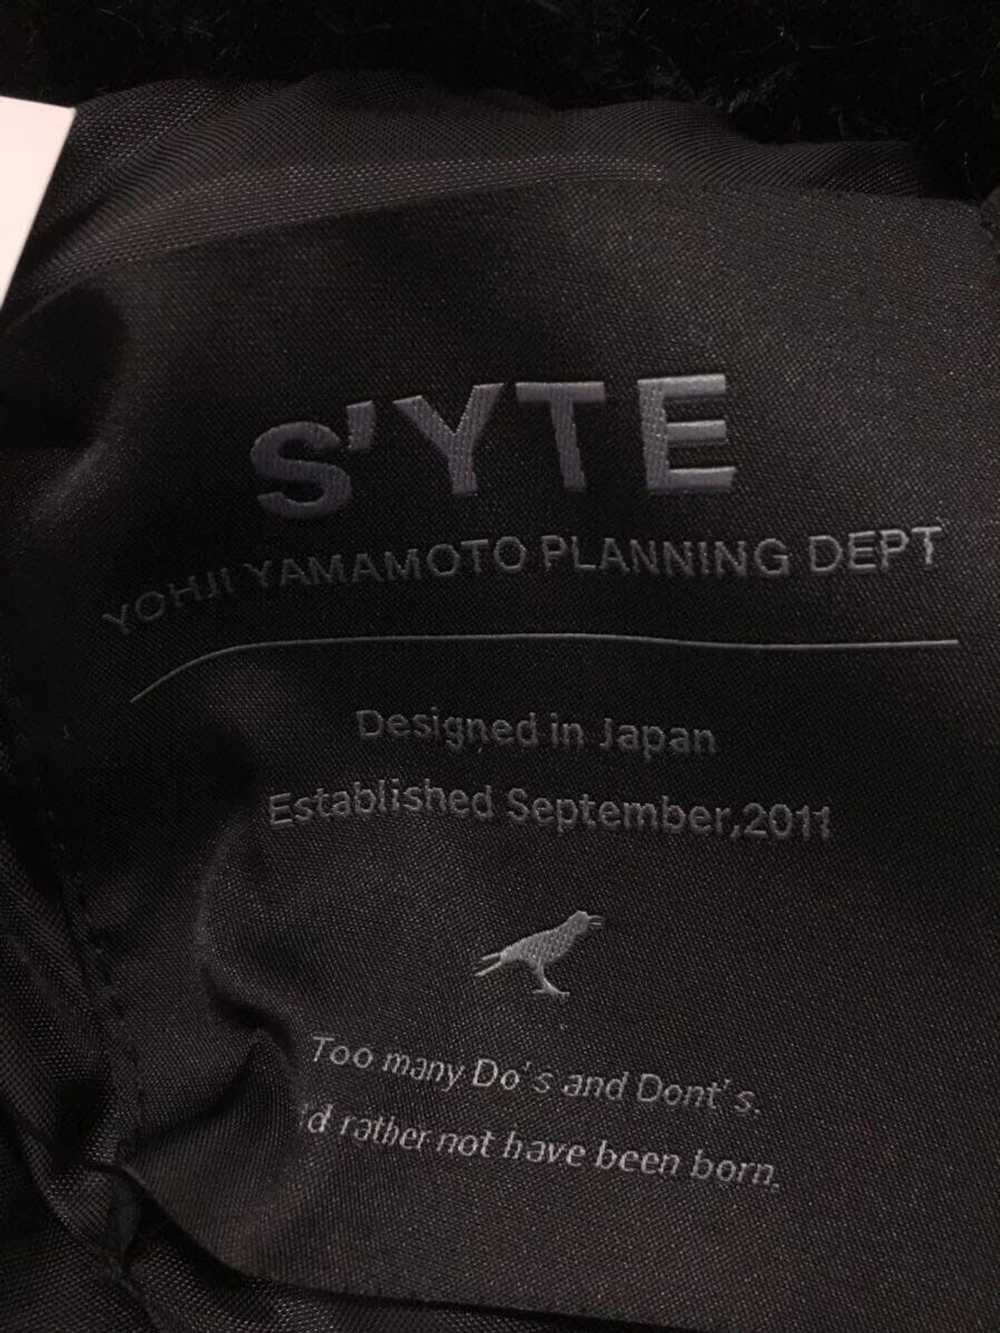 Yohji Yamamoto YOHJI YAMAMOTO syte fleece jacket - image 3